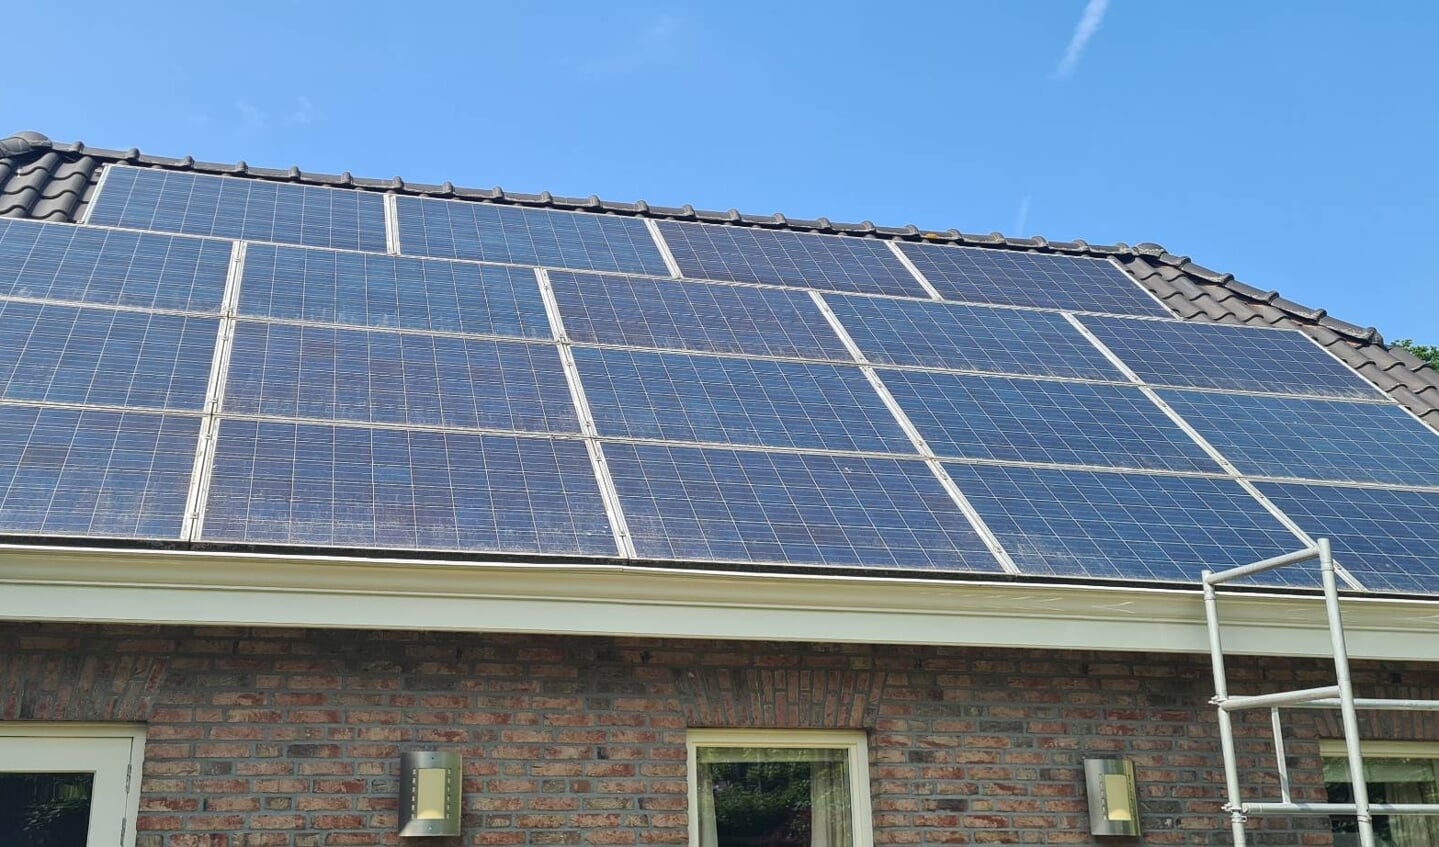 Extra zonnepanelen om meer energie te besparen.